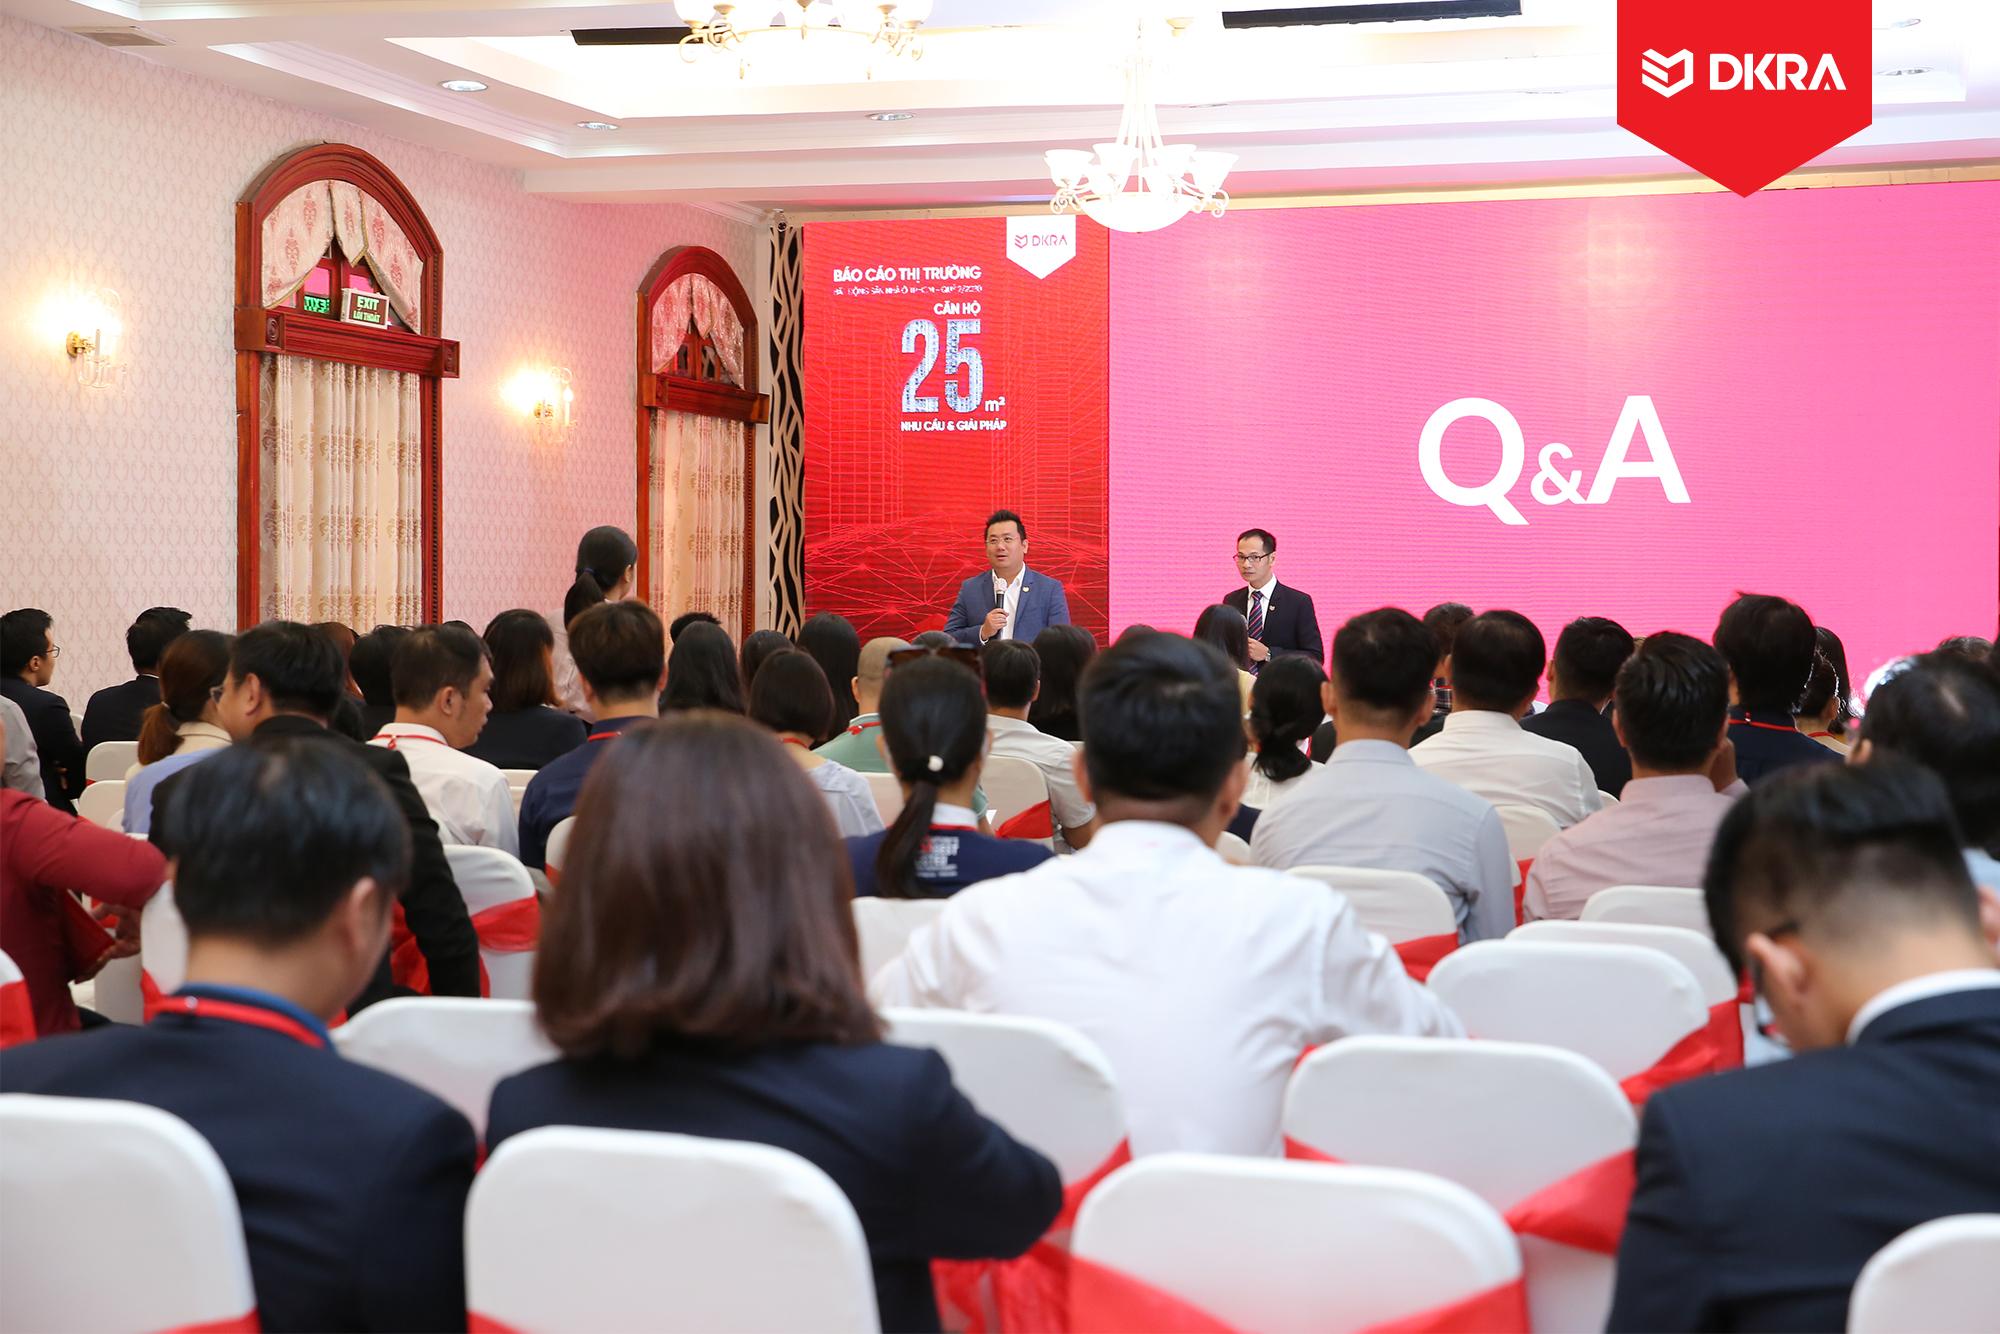 Ông Phạm Lâm - CEO DKRA Vietnam giải đáp các thắc mắc của khách tham dự và báo giới về thị trường bất động sản trong phần Q&A.